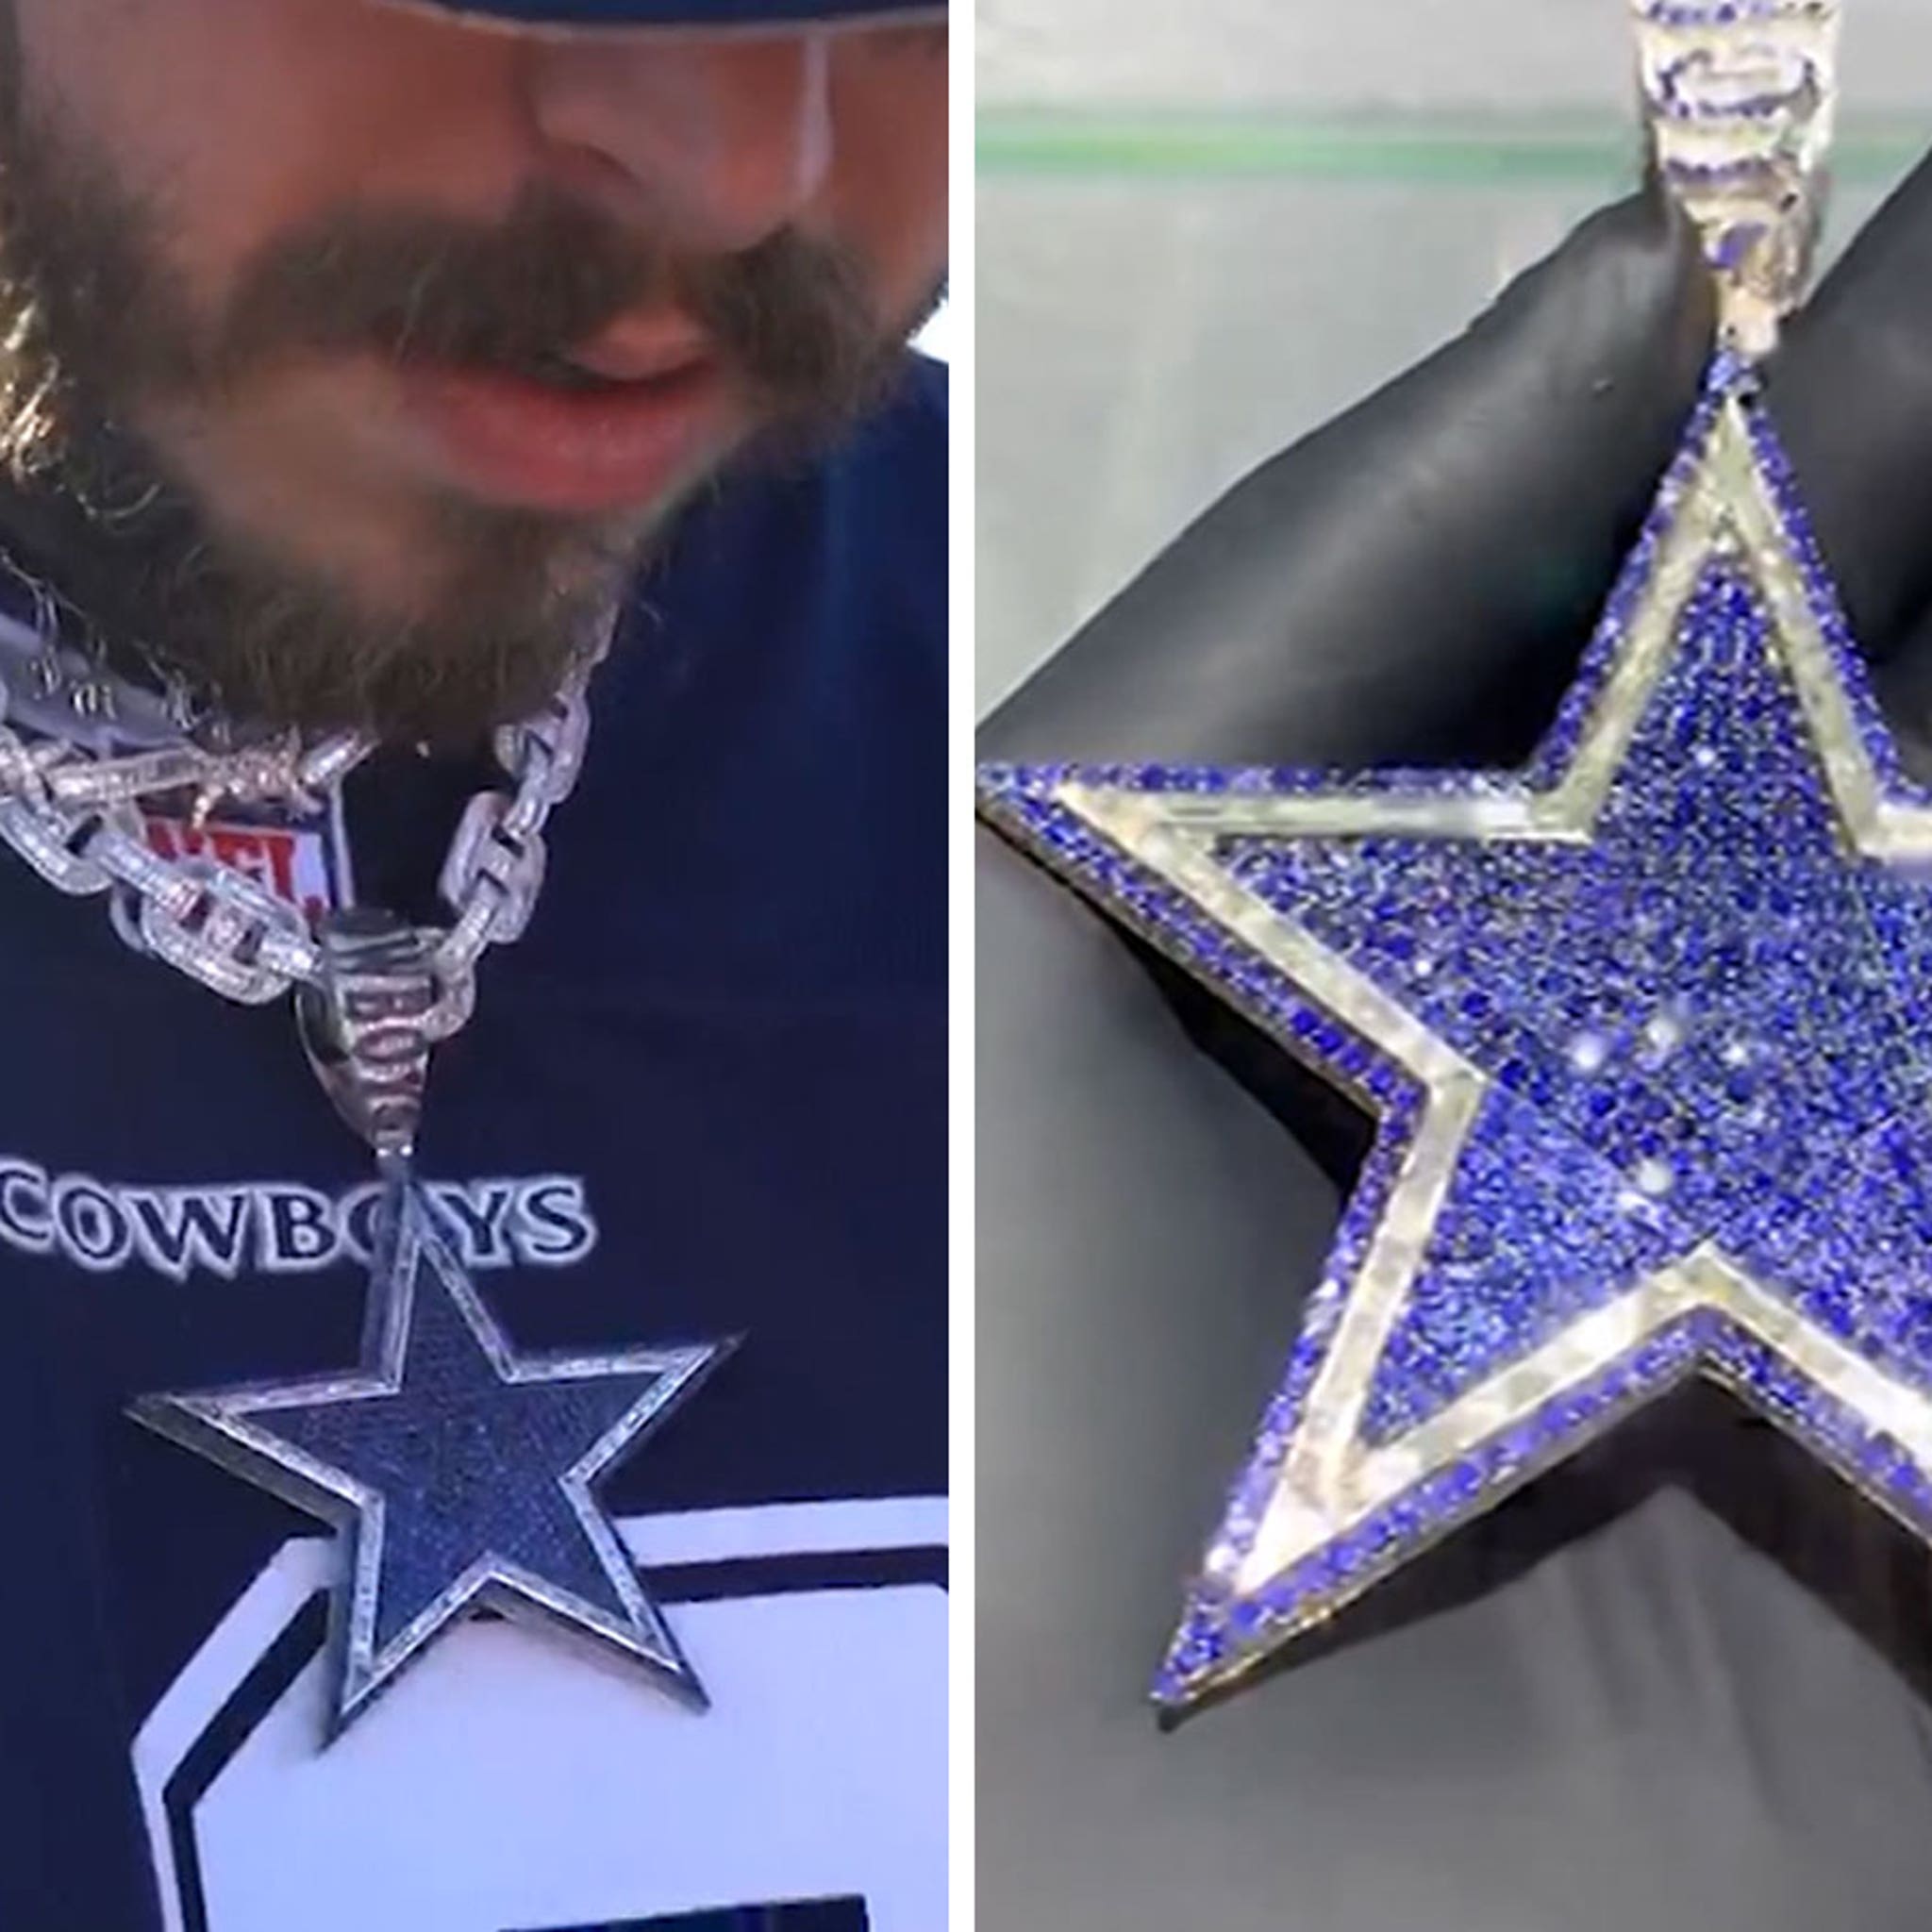 Post Malone Shows Off $250k Dallas Cowboys Diamond Chain